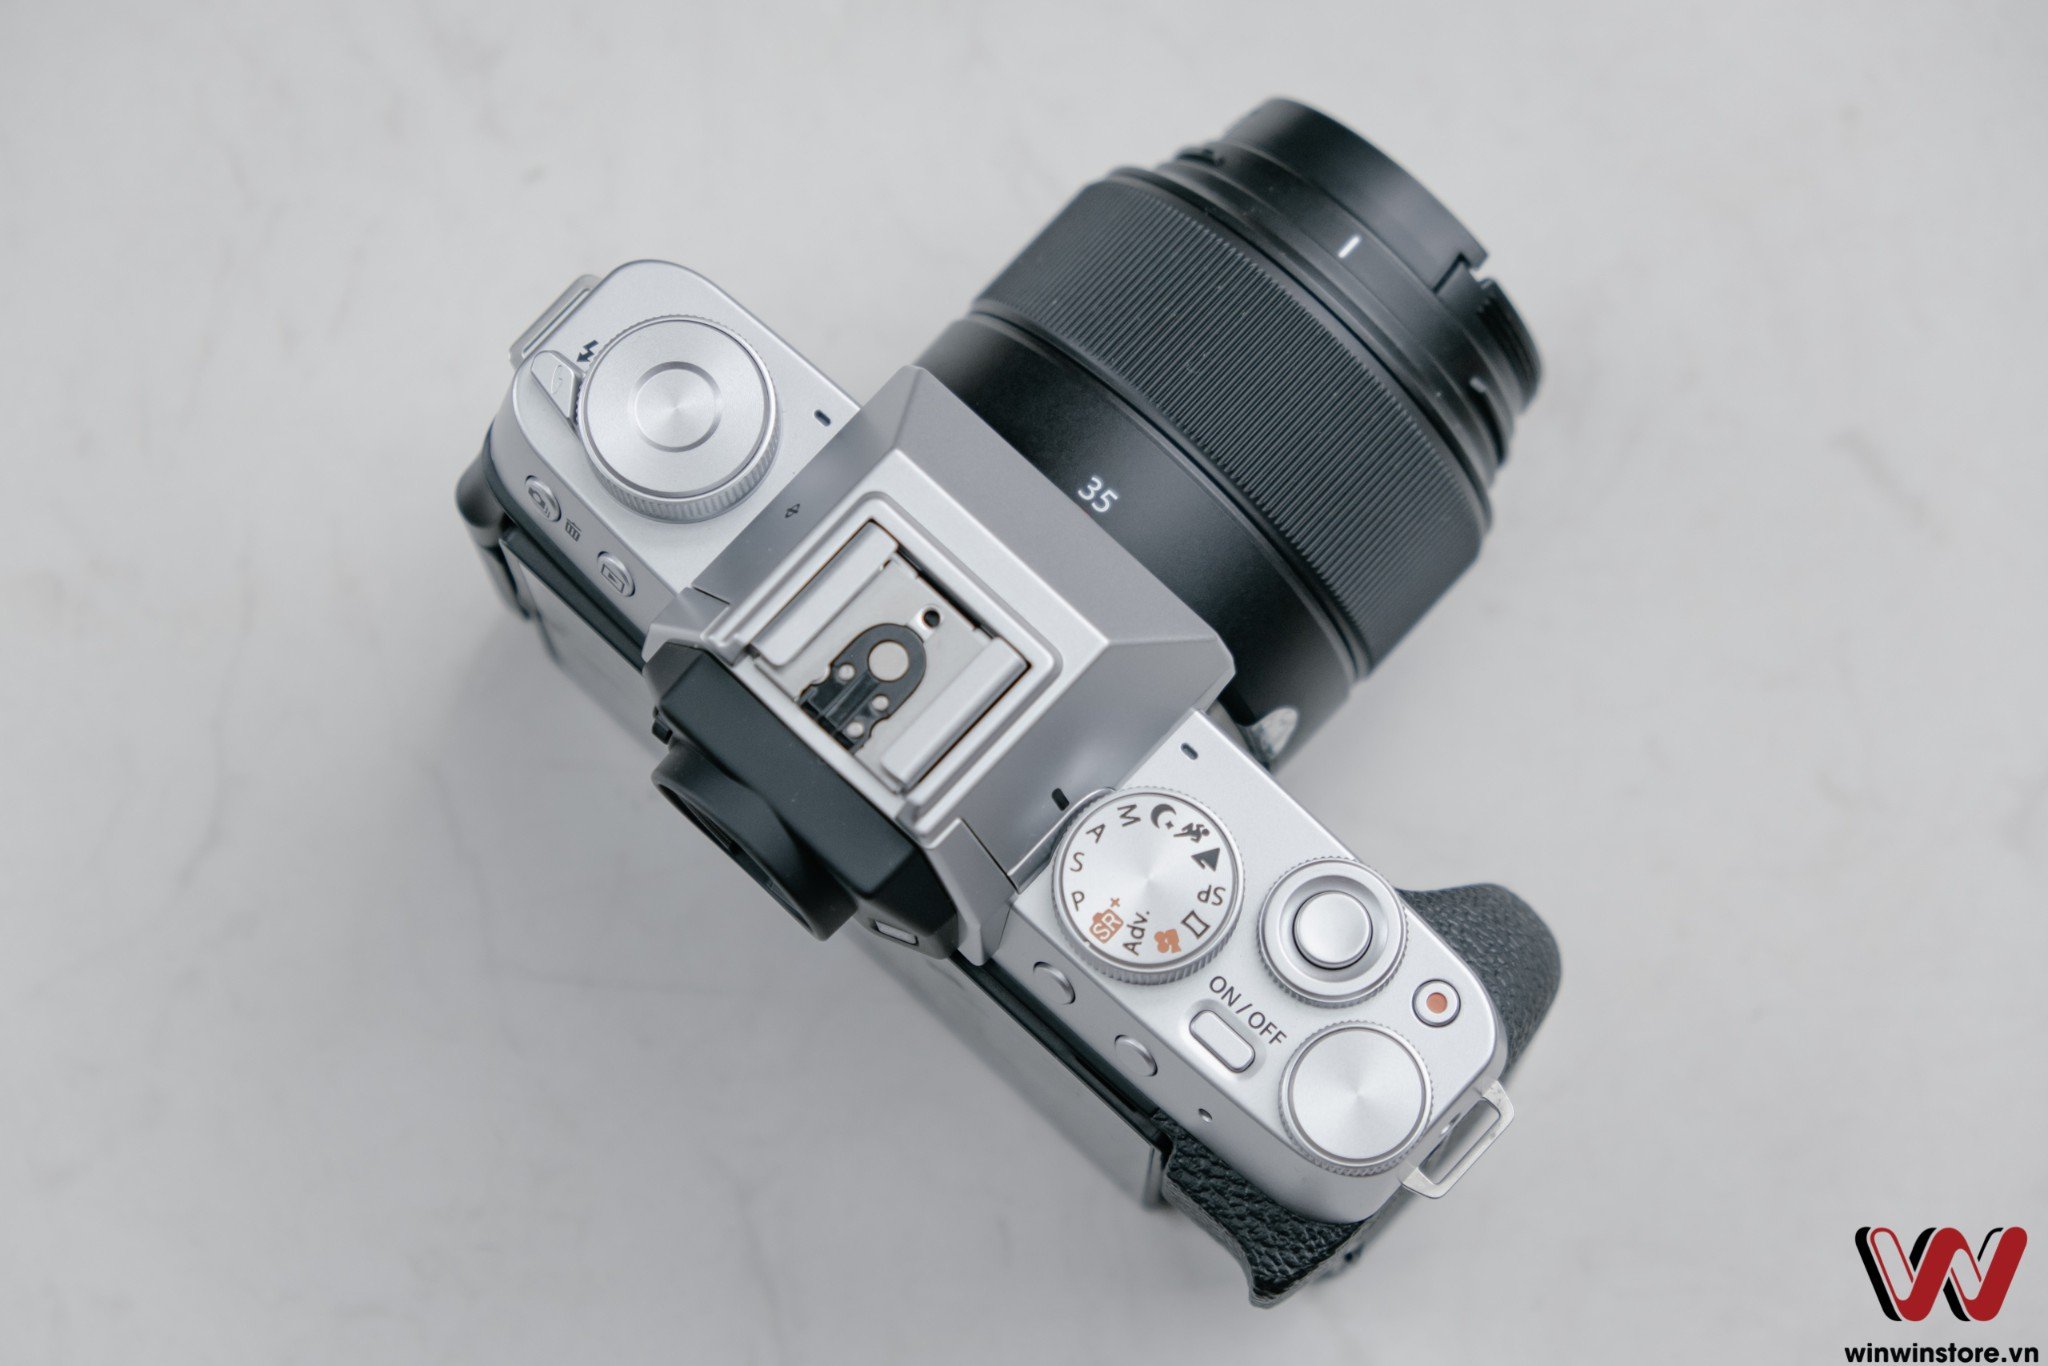 Trên tay và đánh giá nhanh Fujifilm X-T200: máy ảnh dành cho người mới